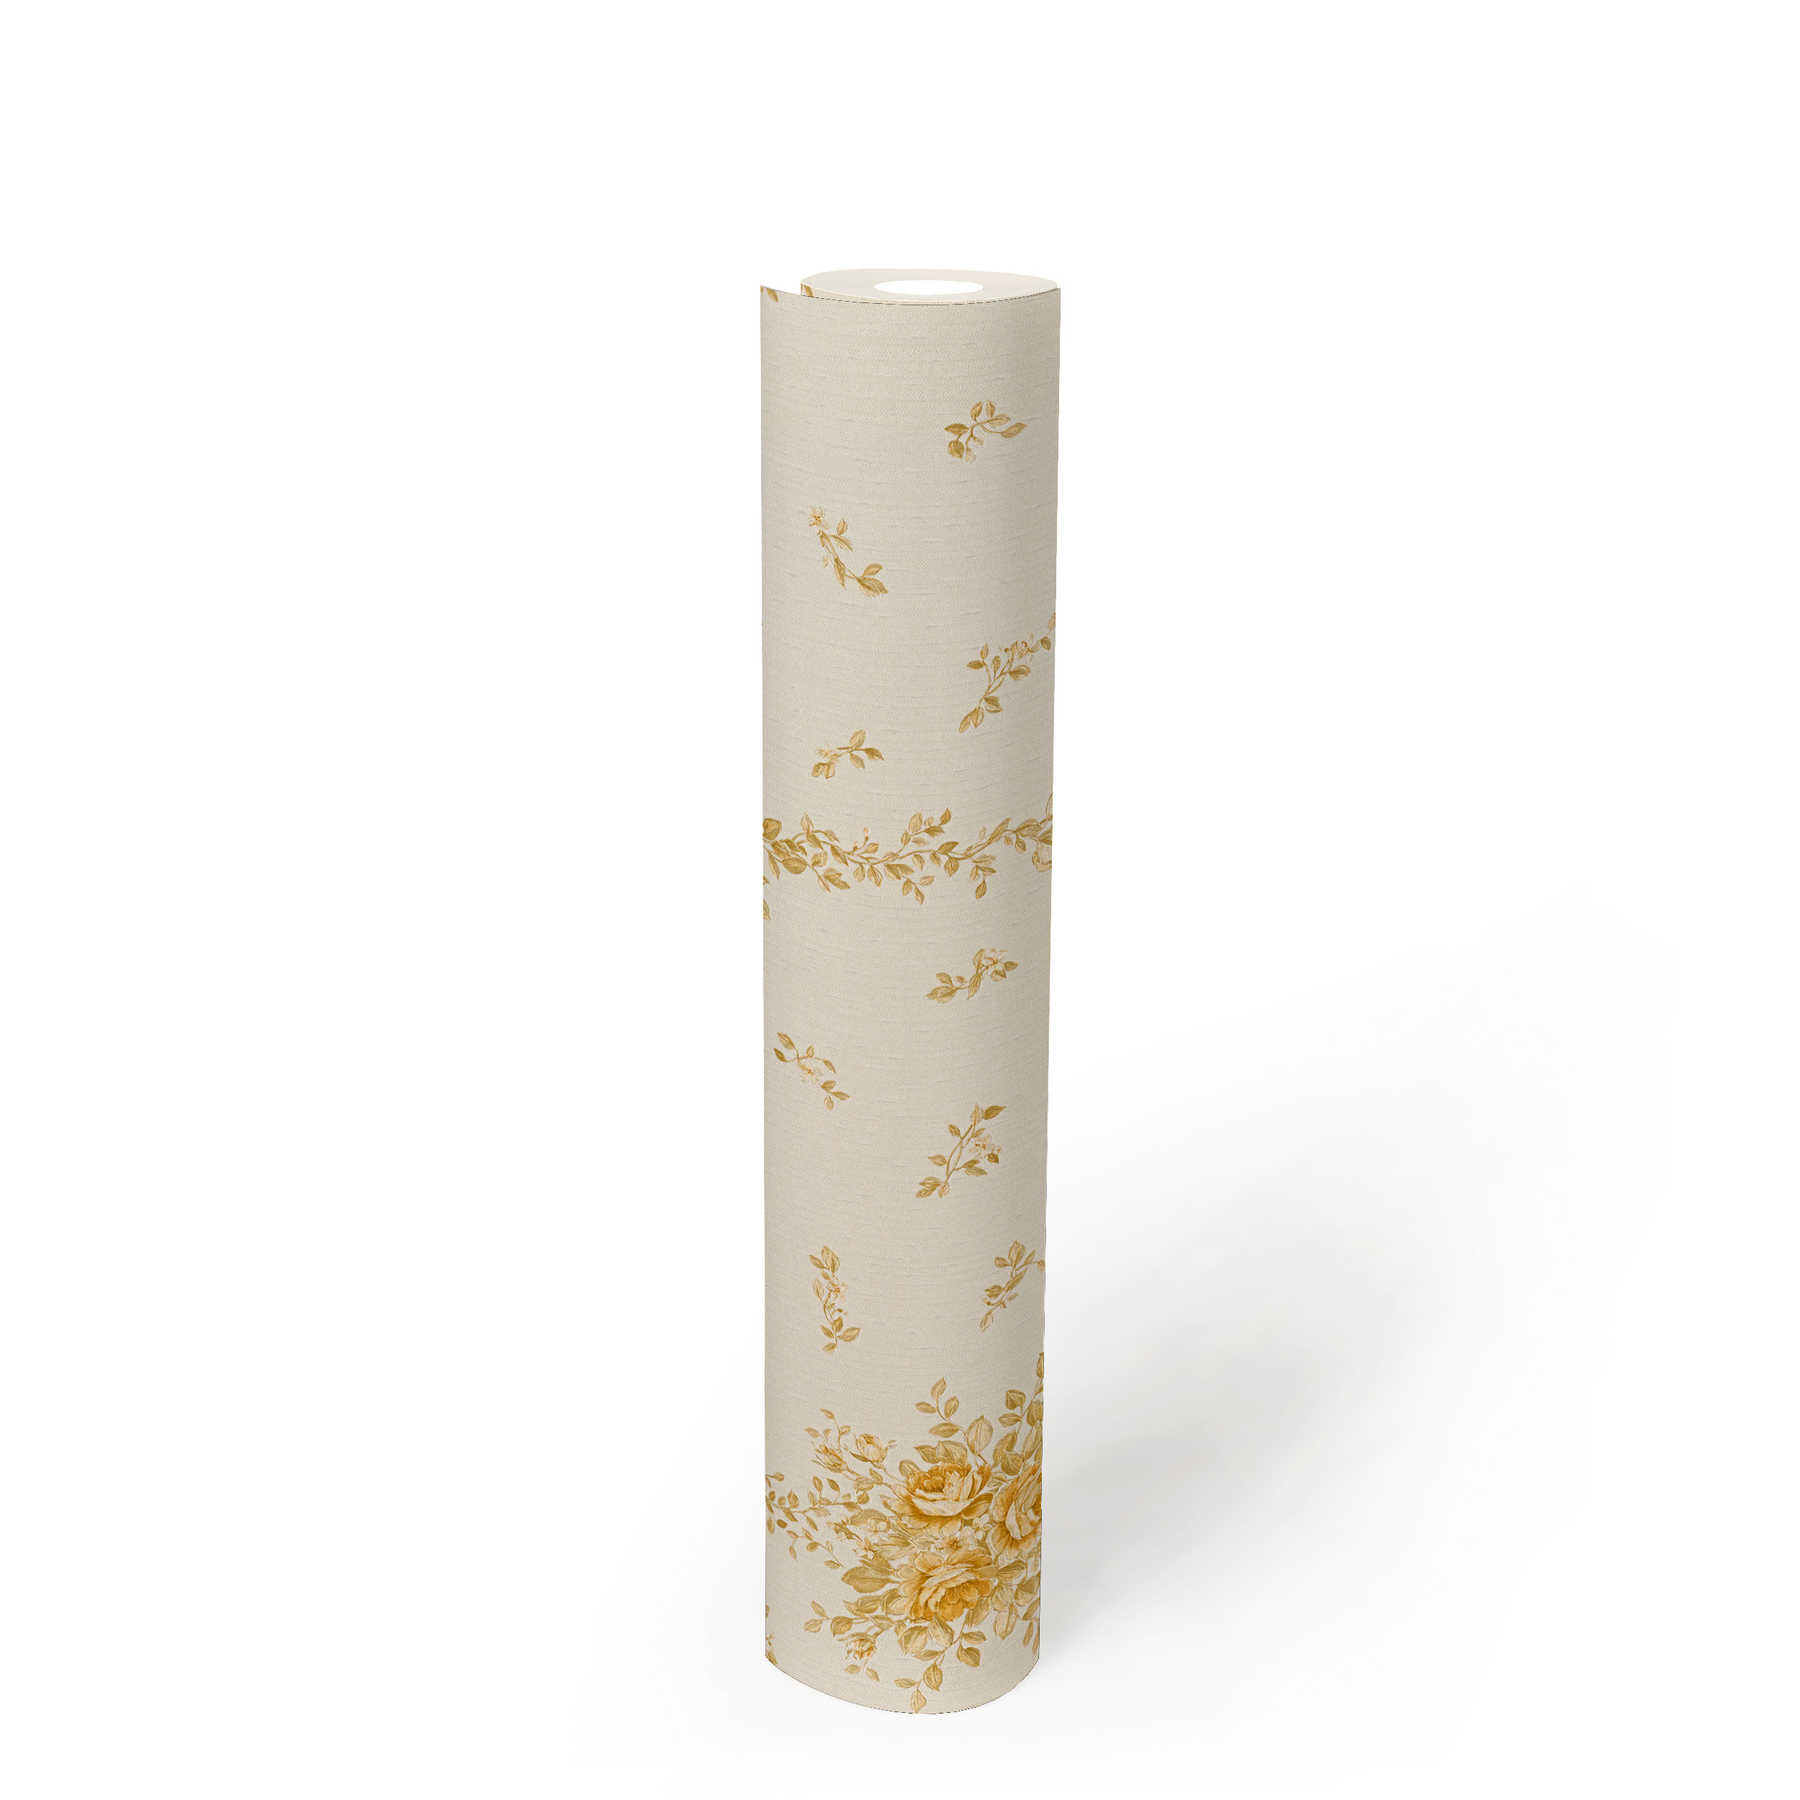             Papel pintado con motivos florales en oro metálico - crema
        